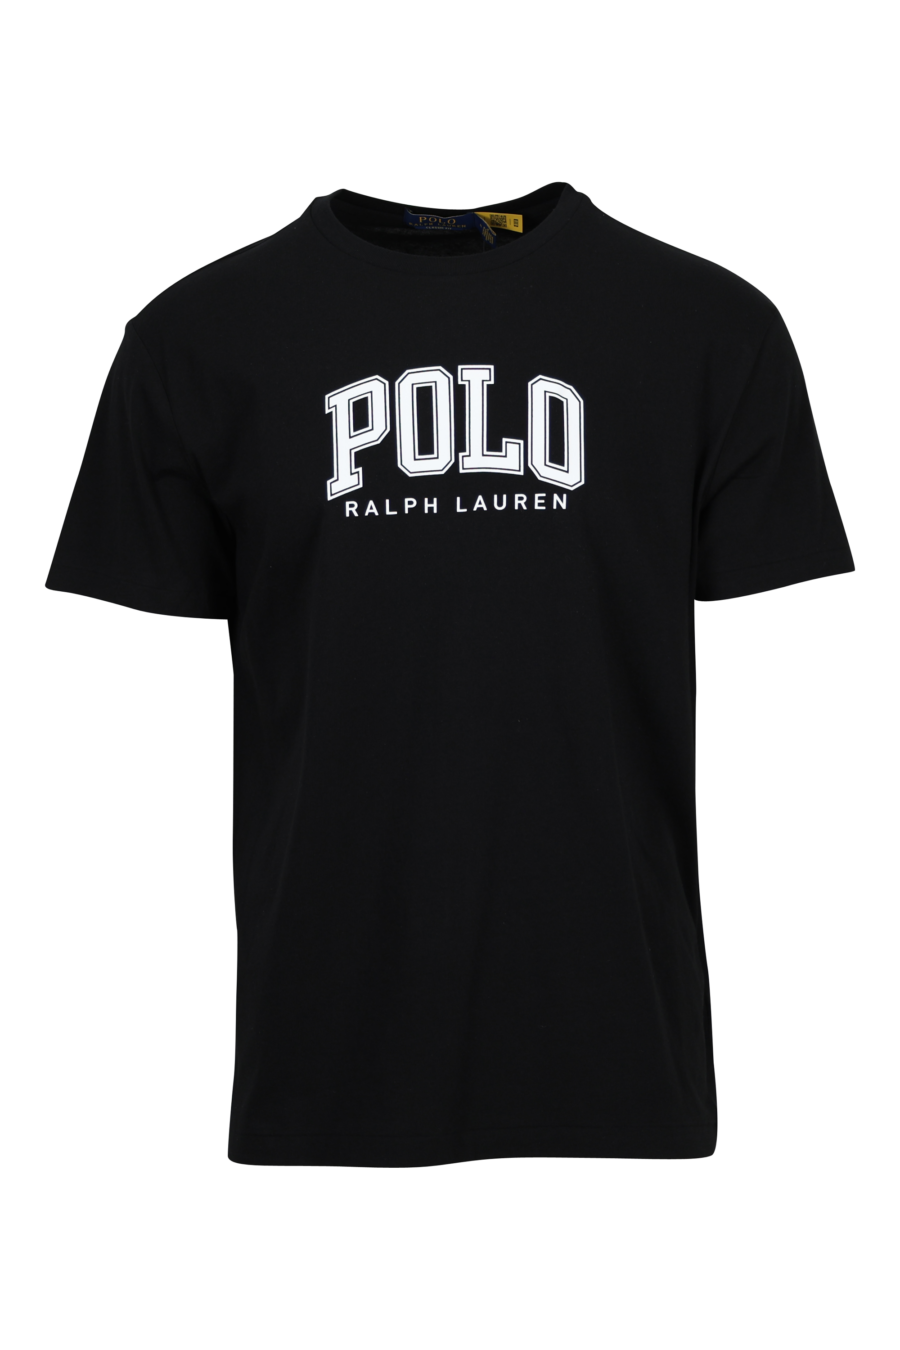 Camiseta negra con maxilogo "polo" en blanco - 3616535662735